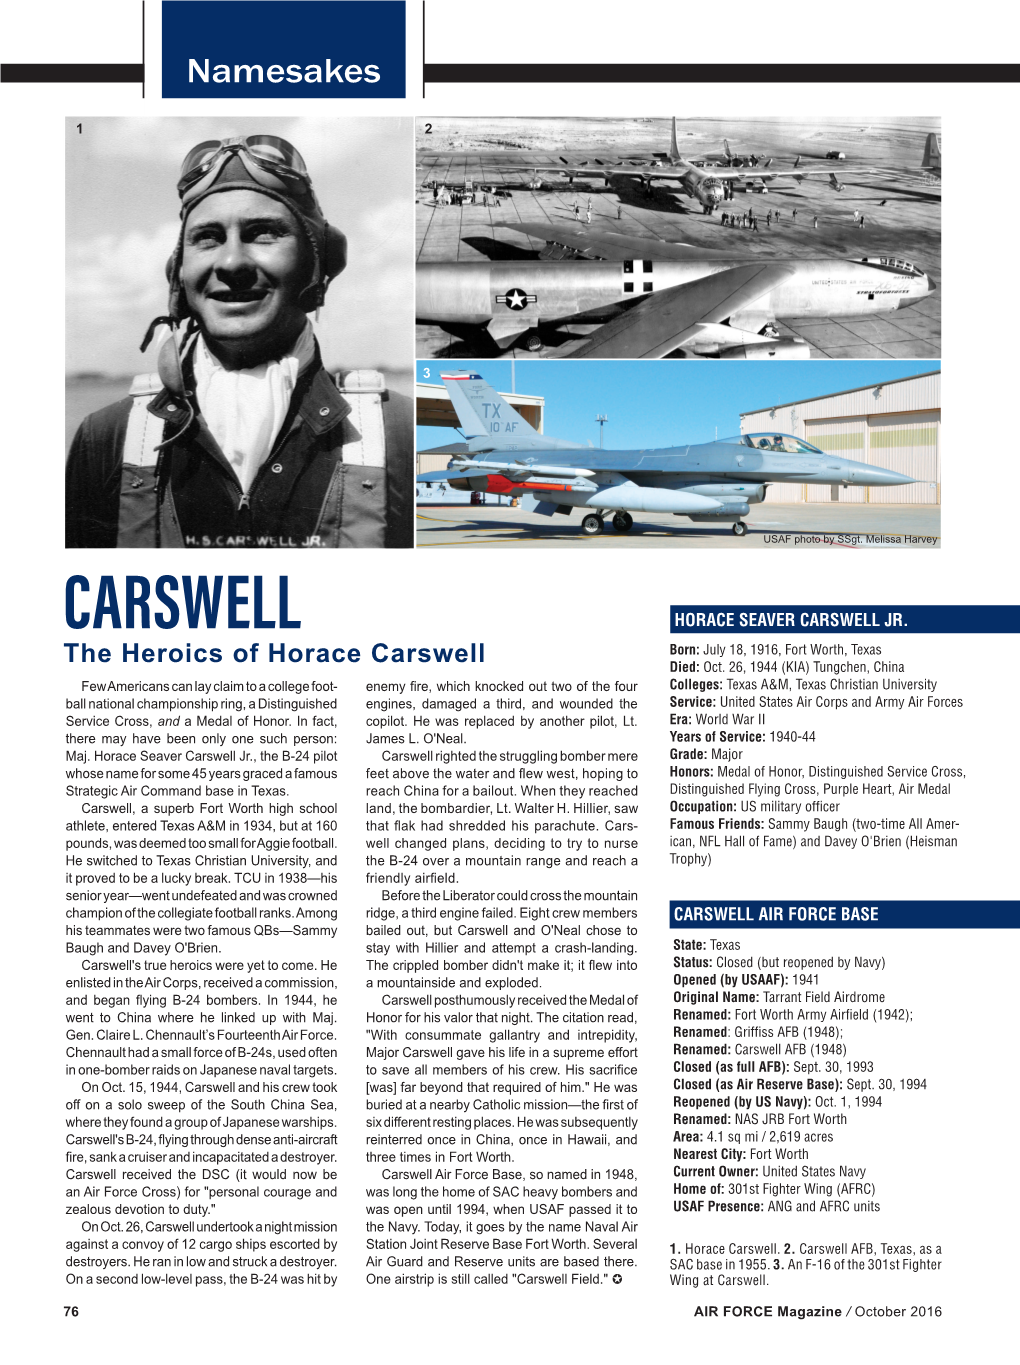 Carswell Horace Seaver Carswell Jr